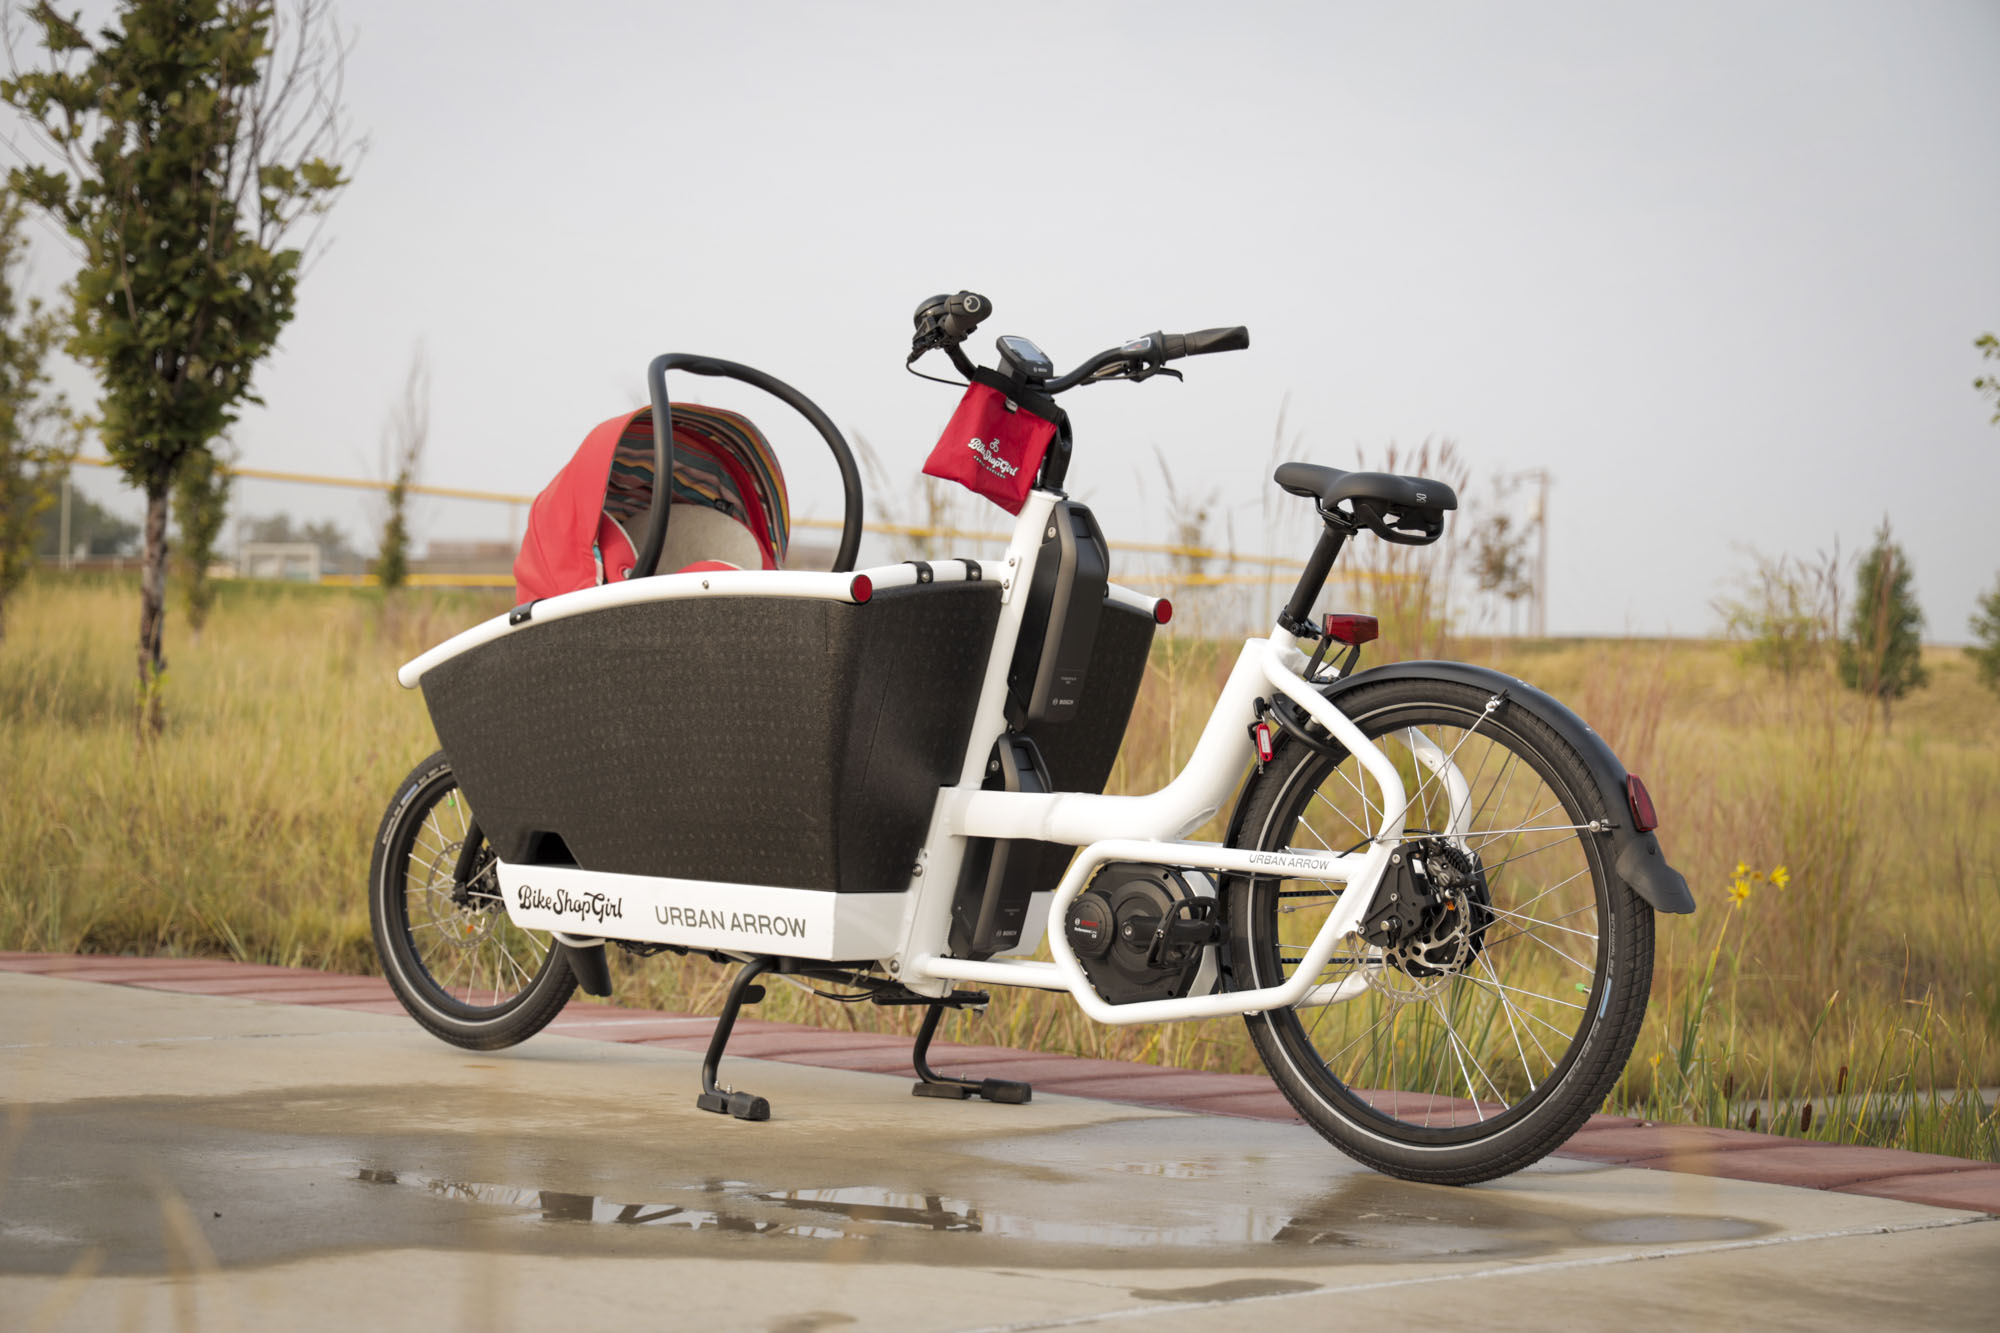 urban arrow cargo bike with baby seat